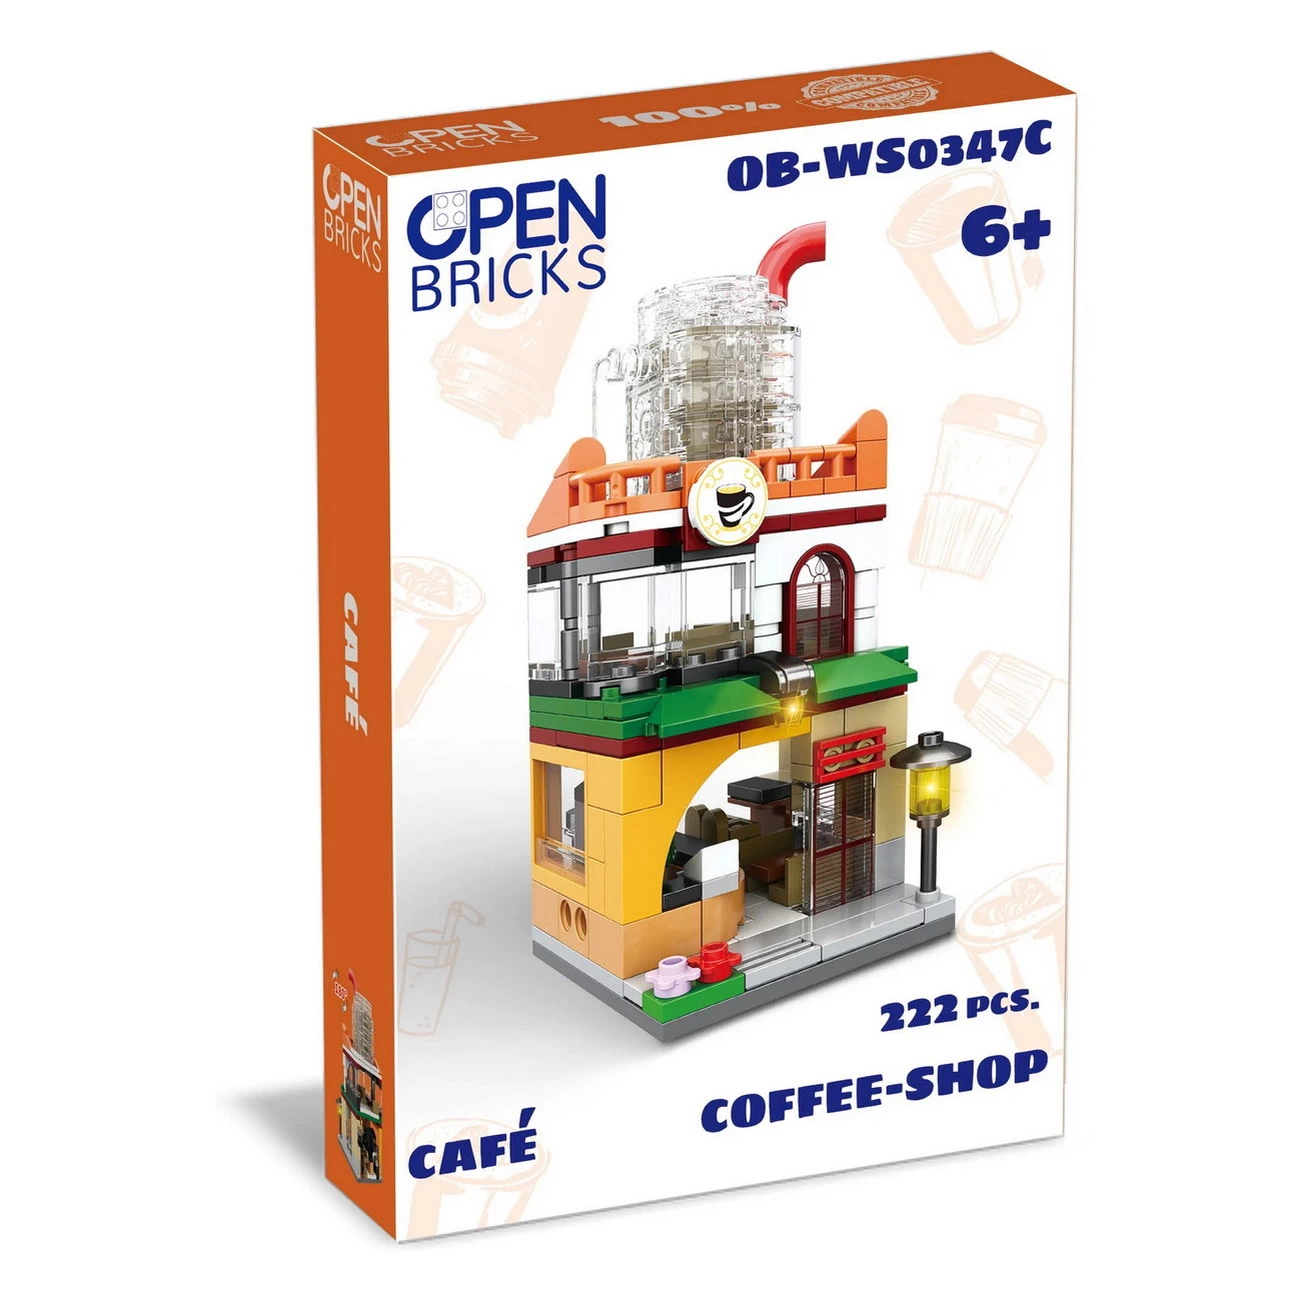 Café OPEN BRICKS